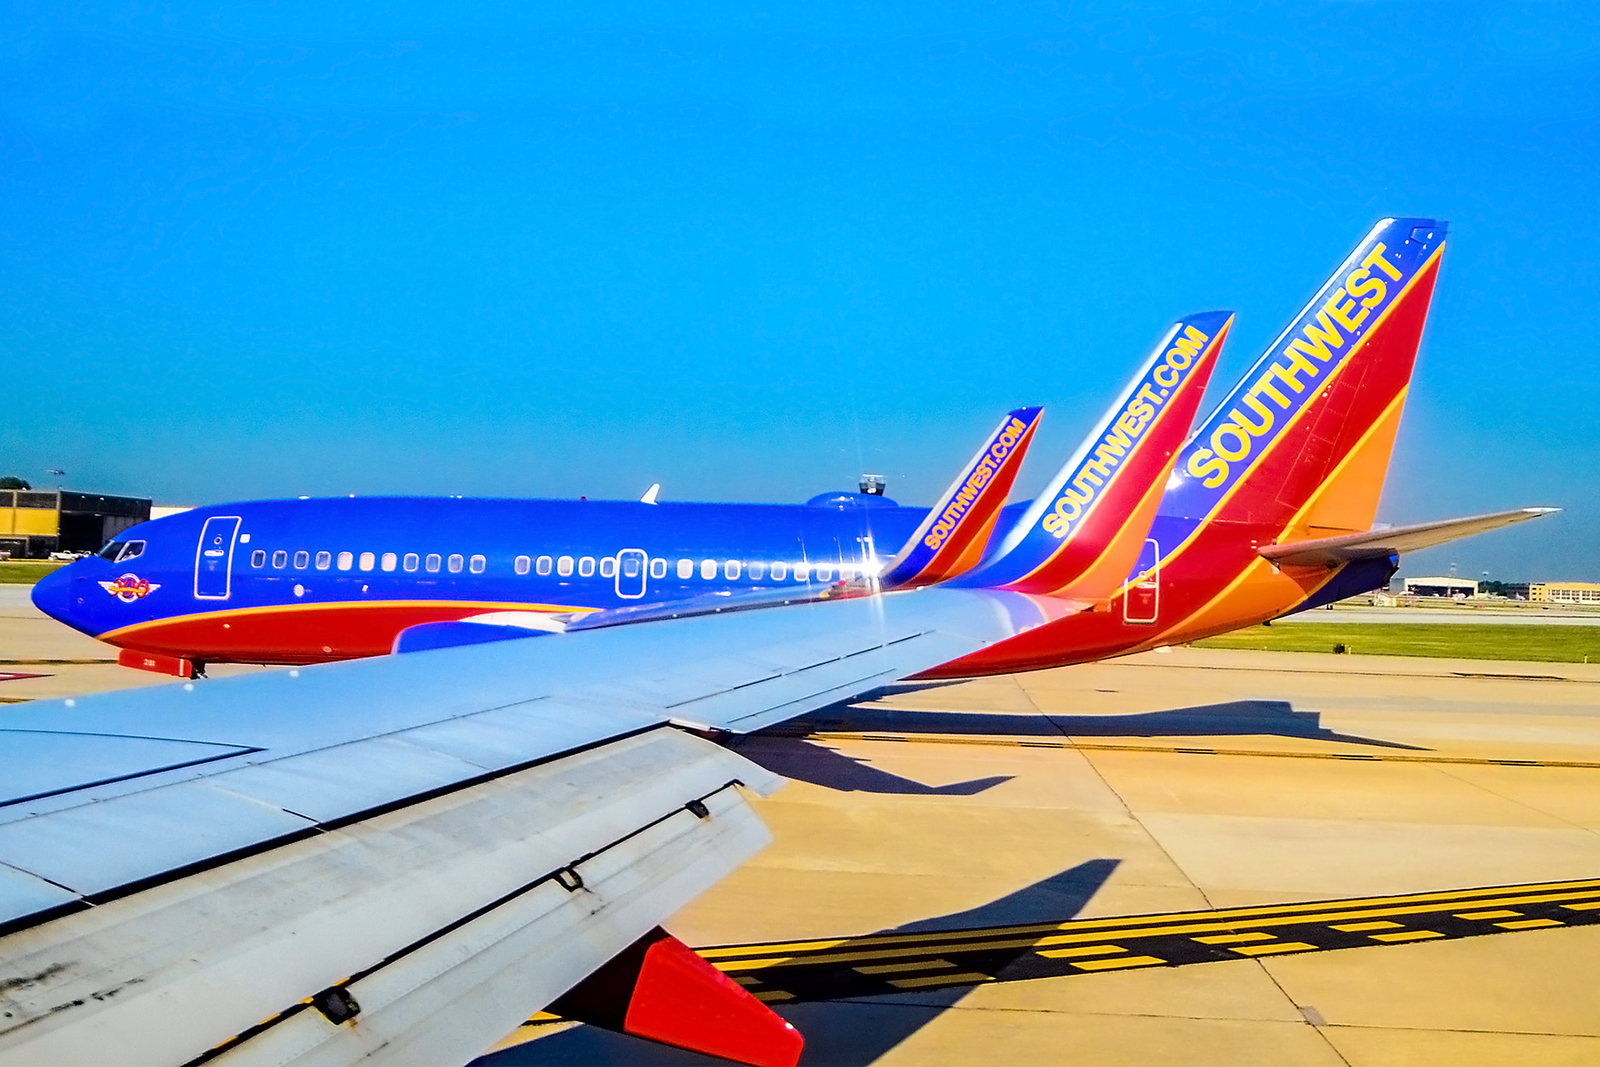 La flota de Southwest Airlines está compuesta por más de 800 aviones, todos ellos Boeing 737. Foto: Tomás del Coro